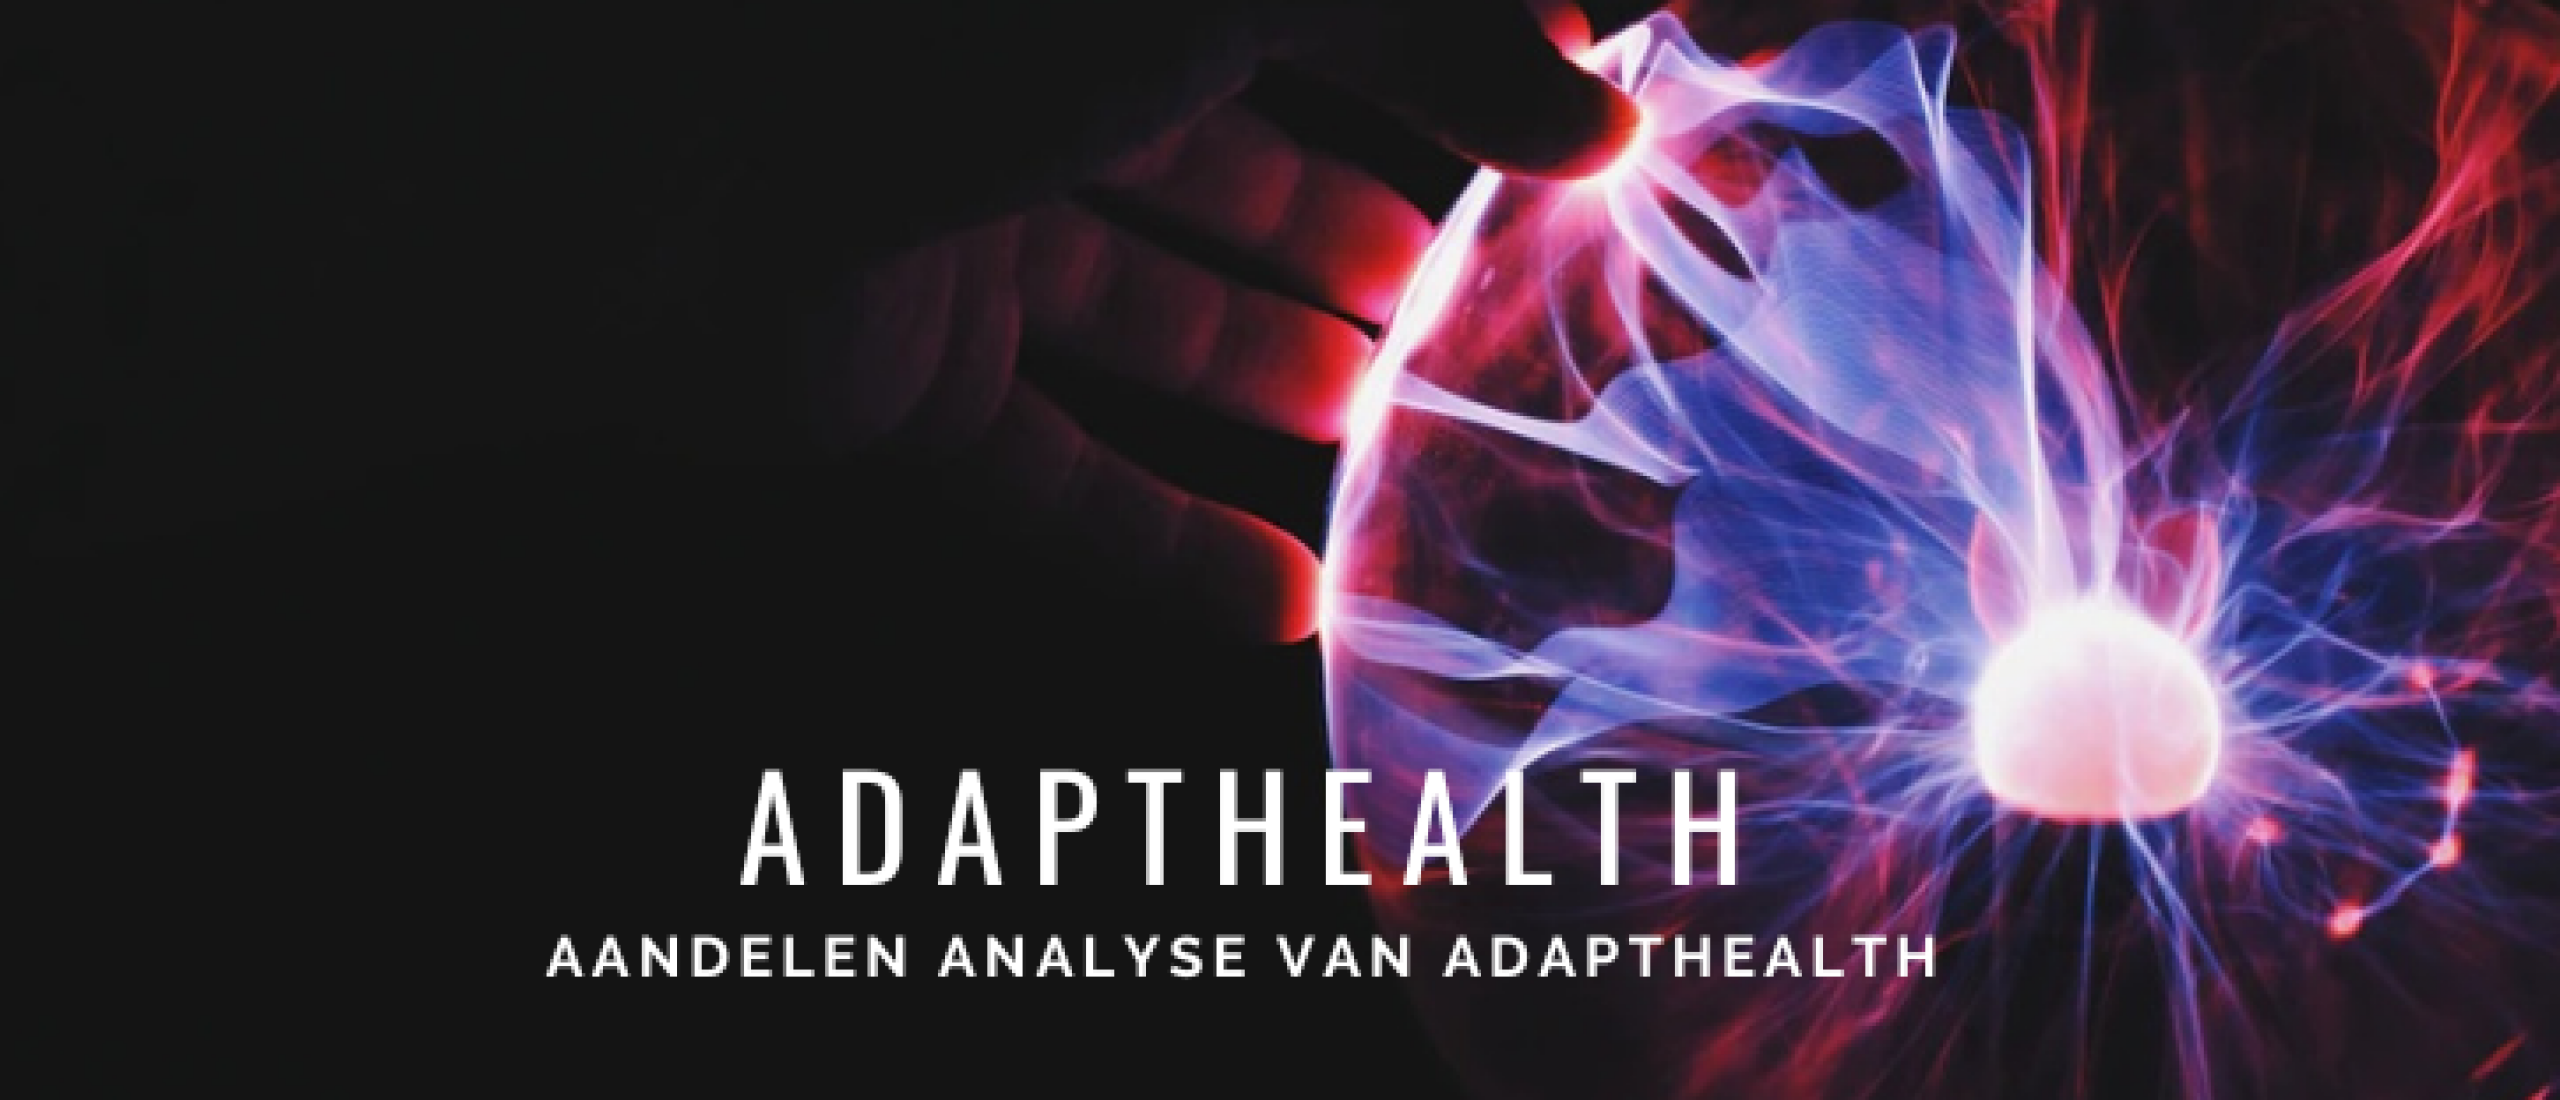 AdaptHealth Aandelen Kopen? Analyse +80% Groeipotentie | Happy Investors